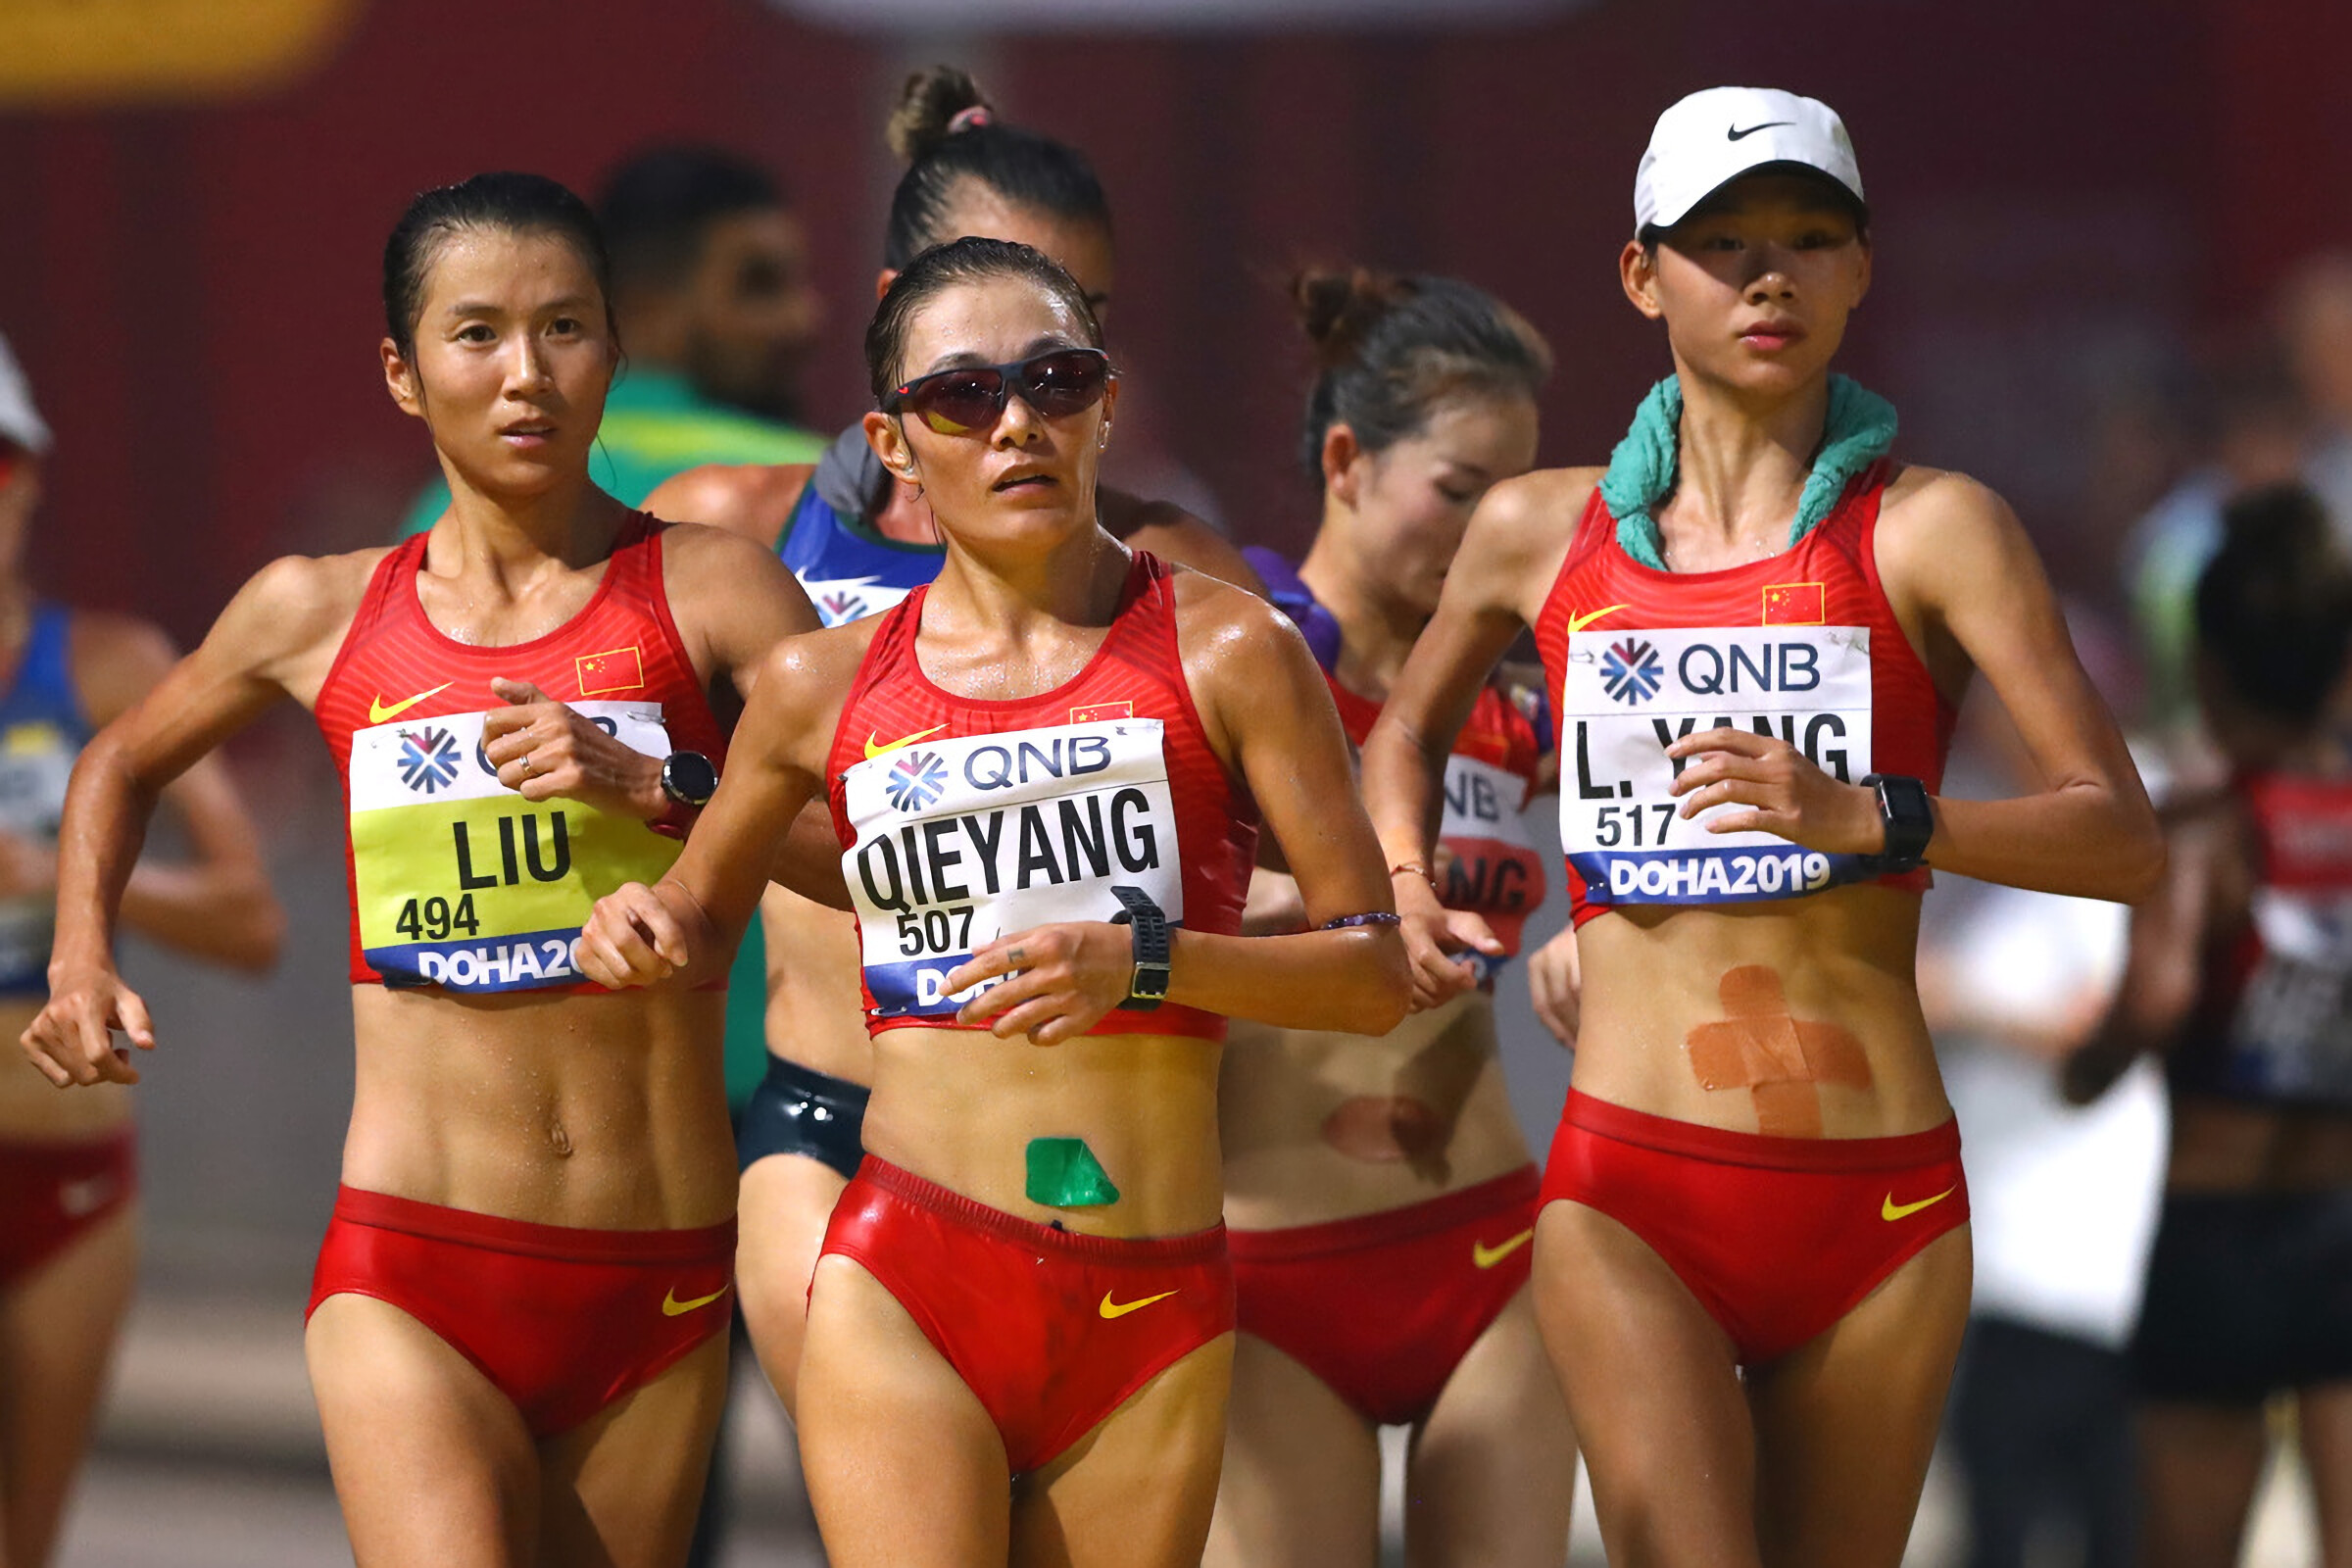 Qieyang Shenjie, Racewalking champion, Chinese athlete, World record holder, 2400x1600 HD Desktop